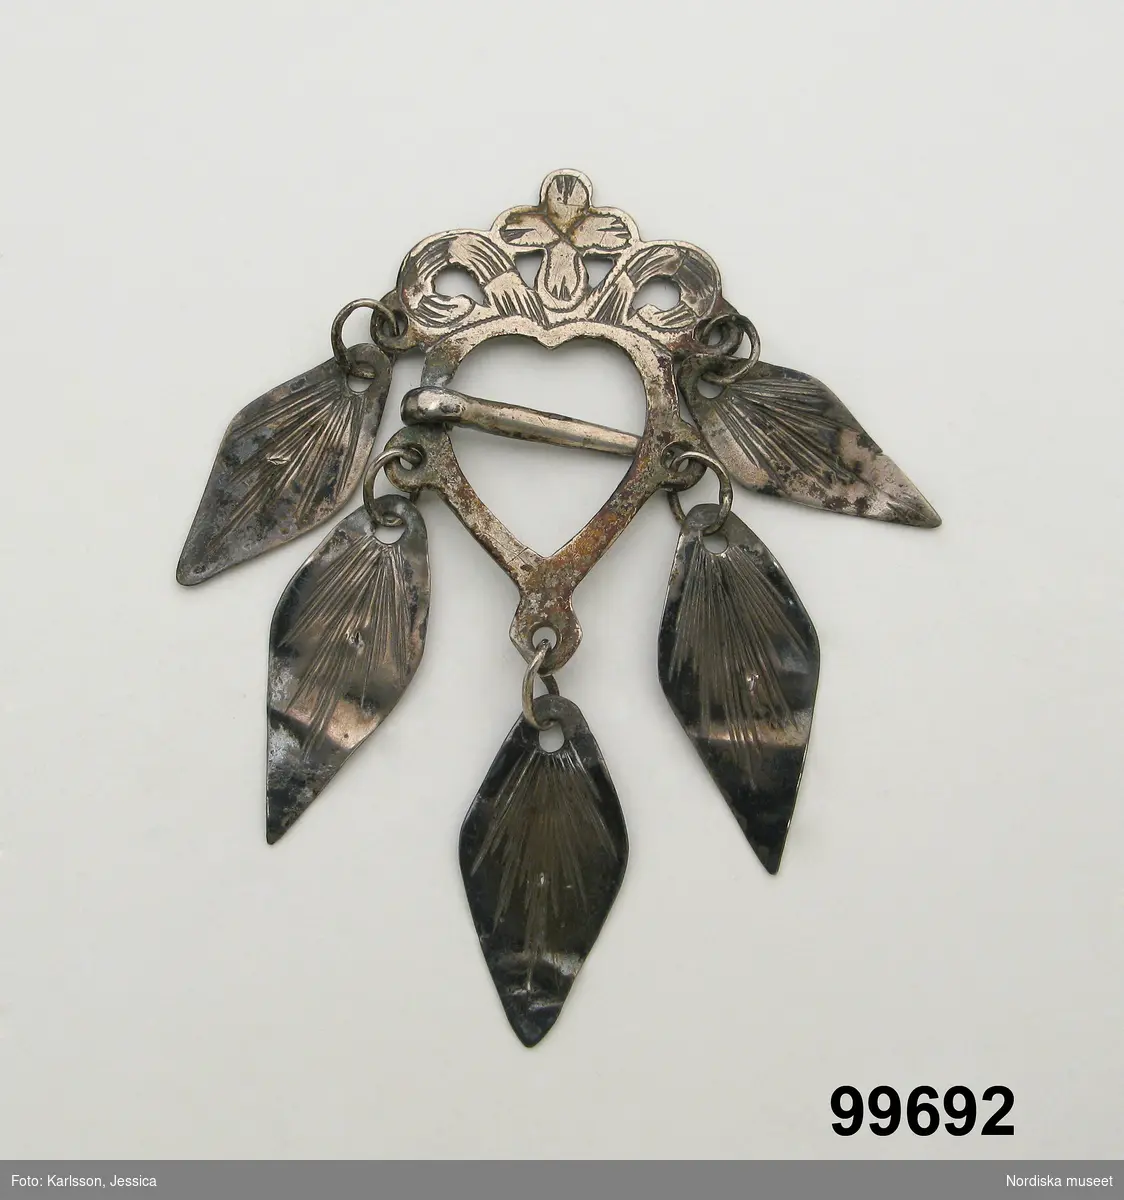 Hjärtformad sölja av silver med ornamenterat krön och 5 lövformade hängen, nål i mitten. Stämplar saknas.

Berit Eldvik maj 2006